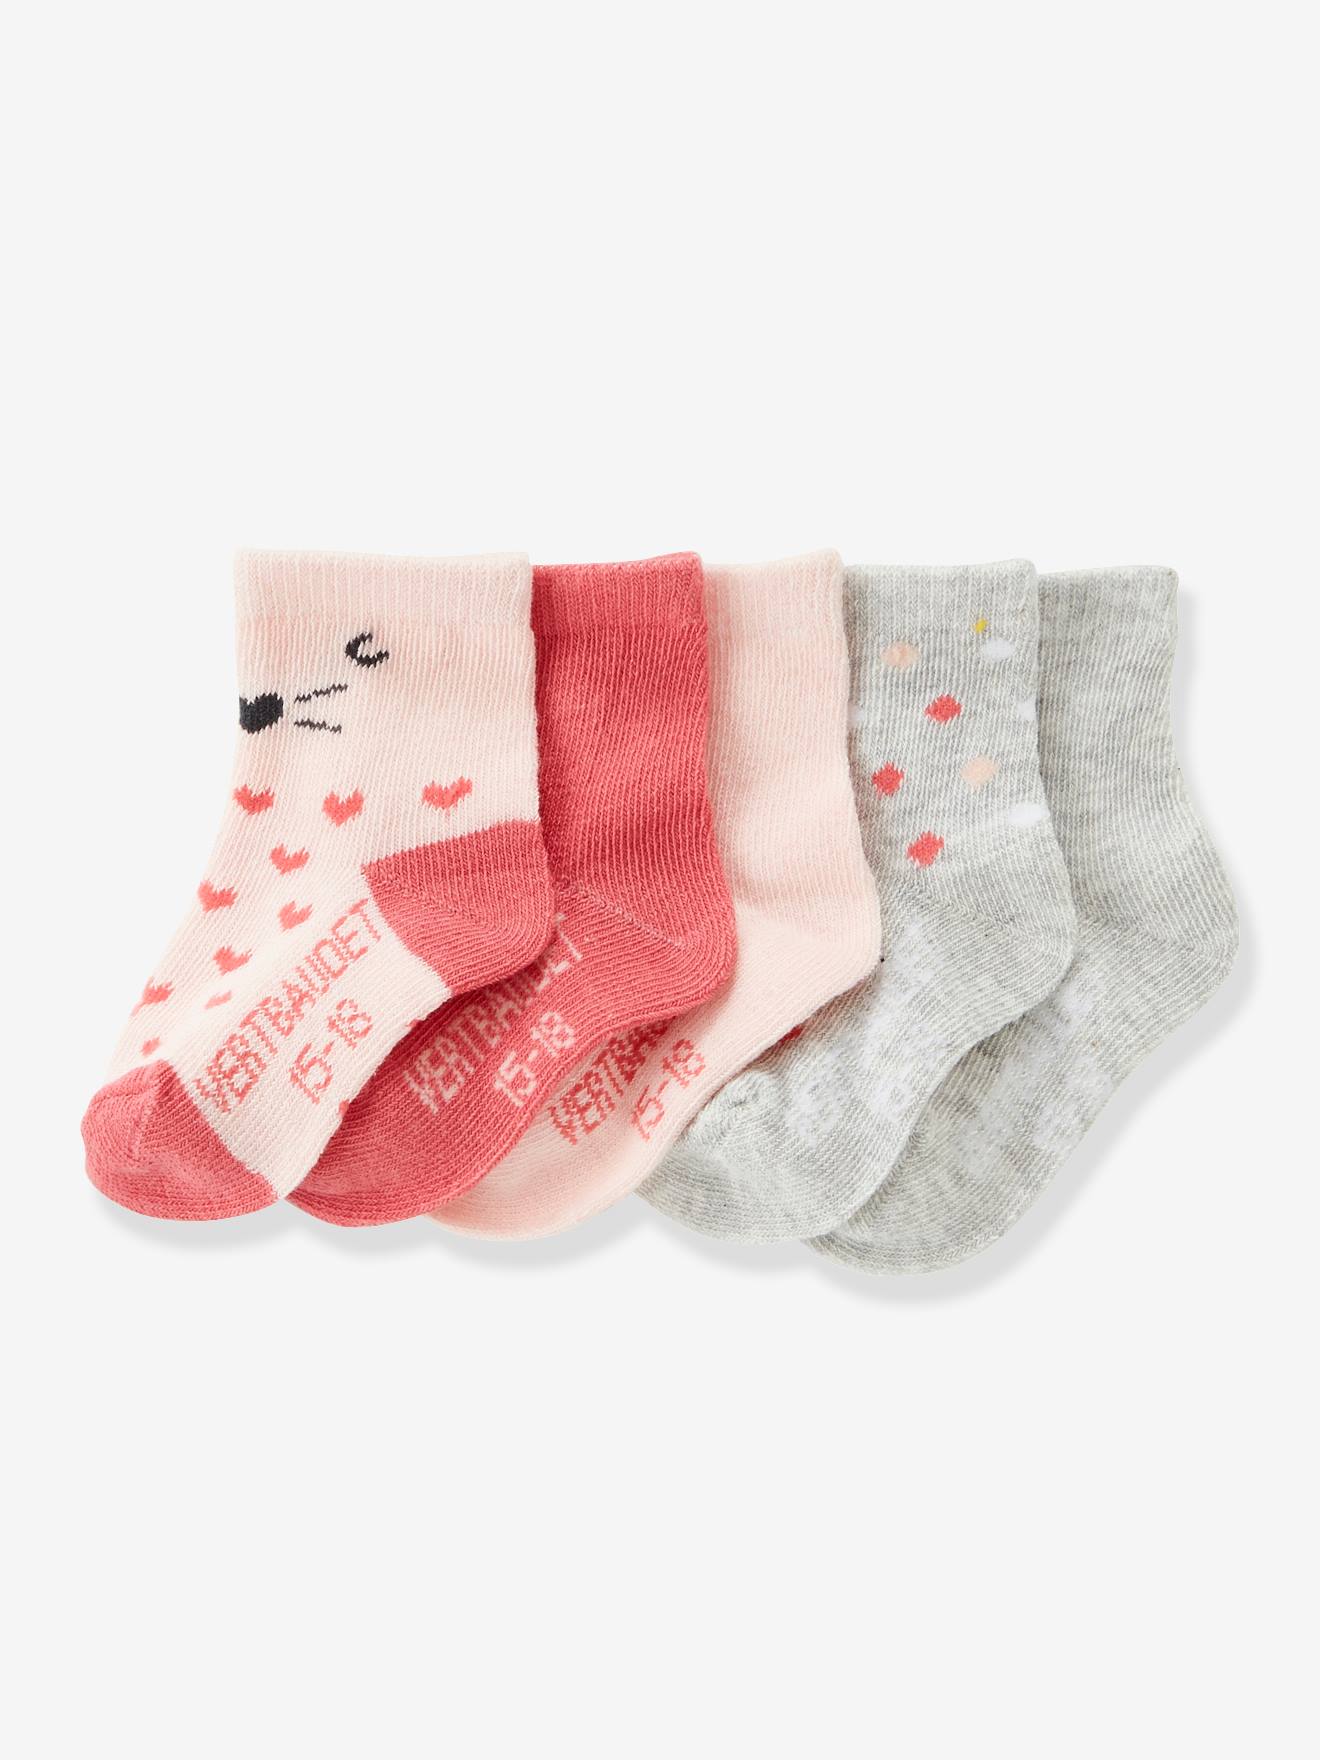 pack of baby socks